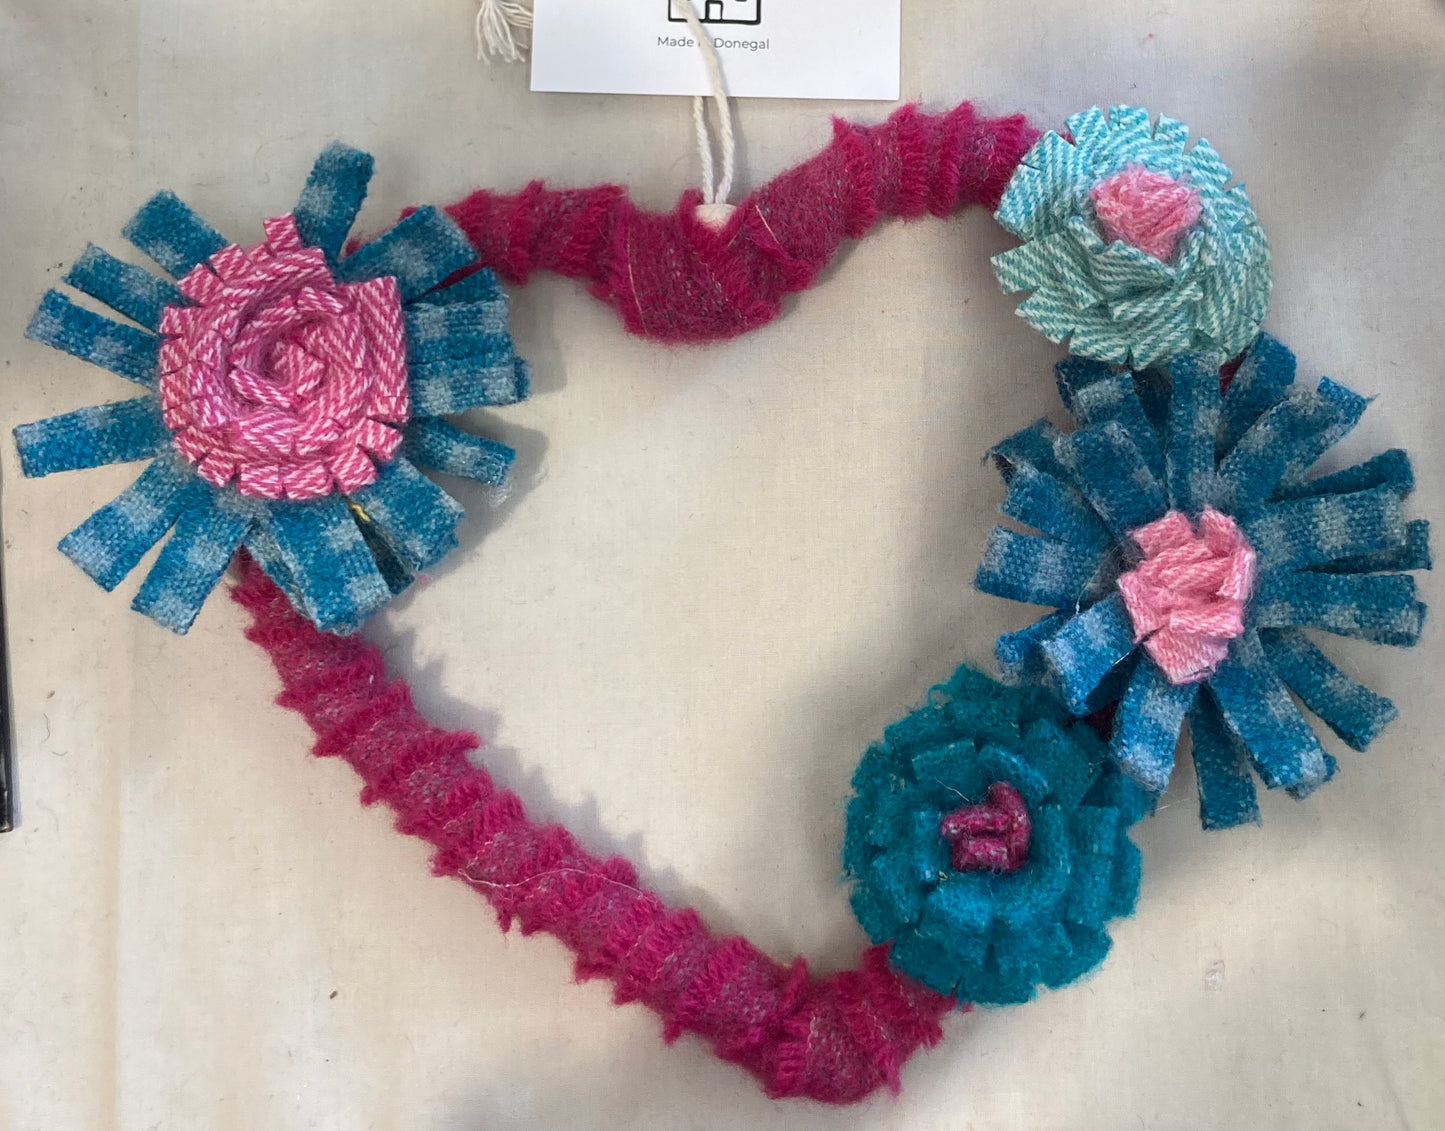 Tweed heart embellished with tweed flowers